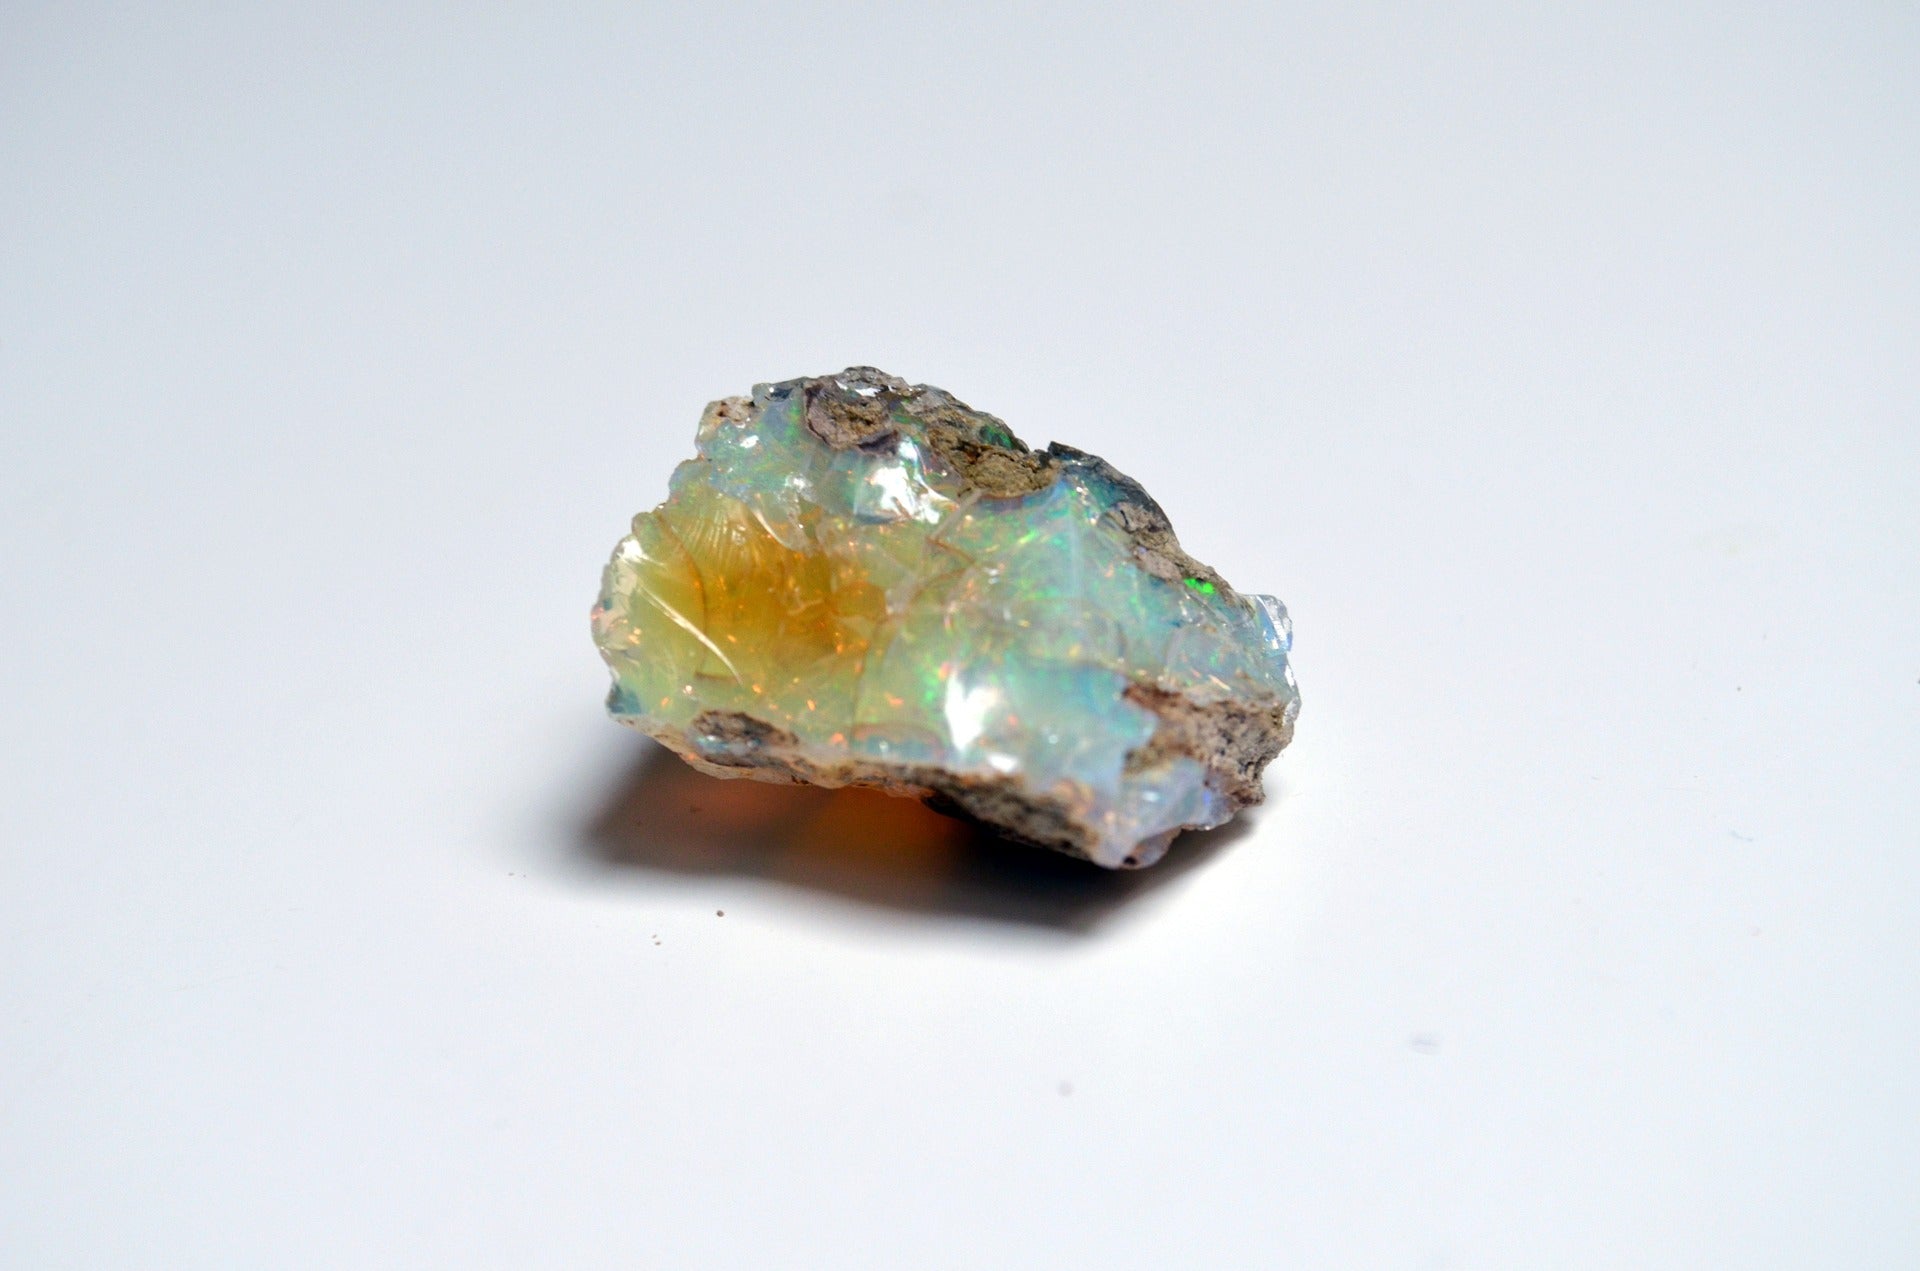 À propos d'Opal : L'opale peut-elle être fabriquée par l'homme ? 